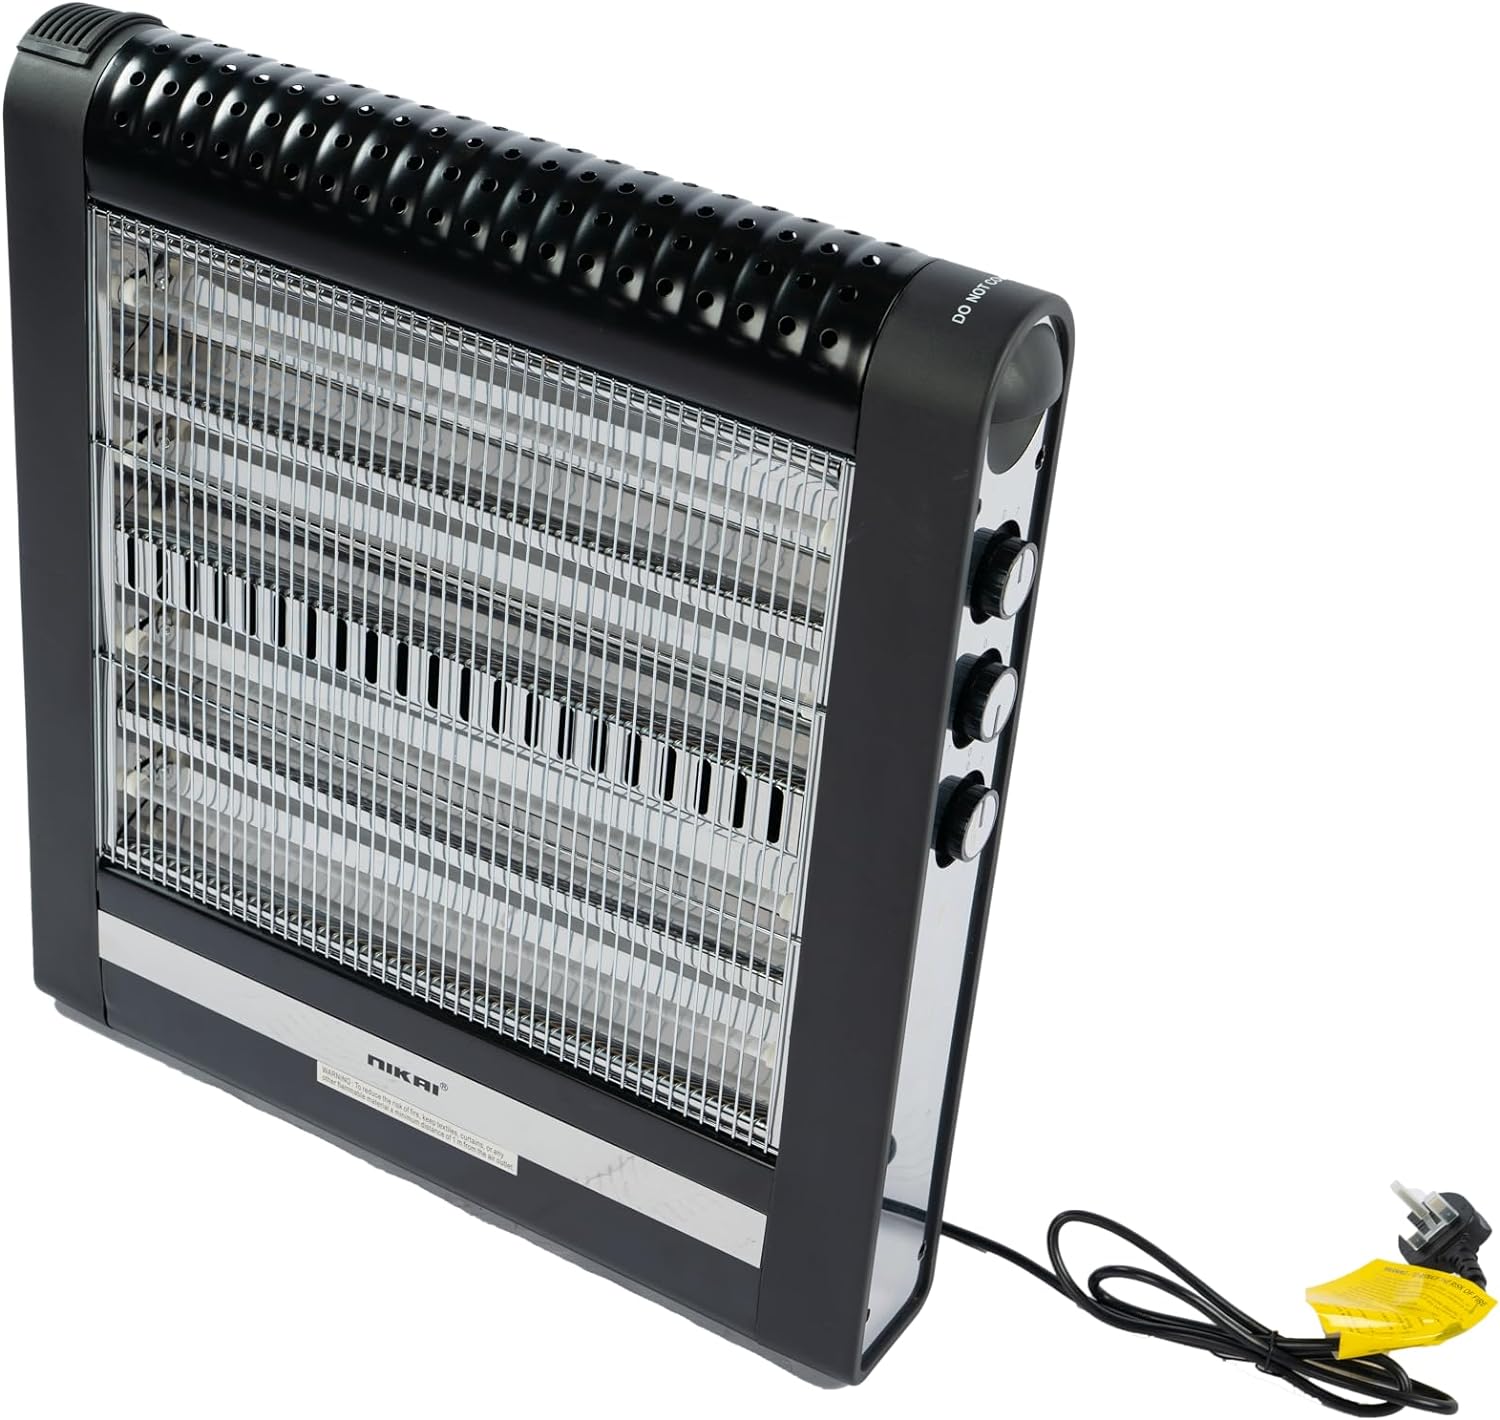 Nikai Electric Fan Heater, 2000W, White - Nfh6006 |Two Years Warranty